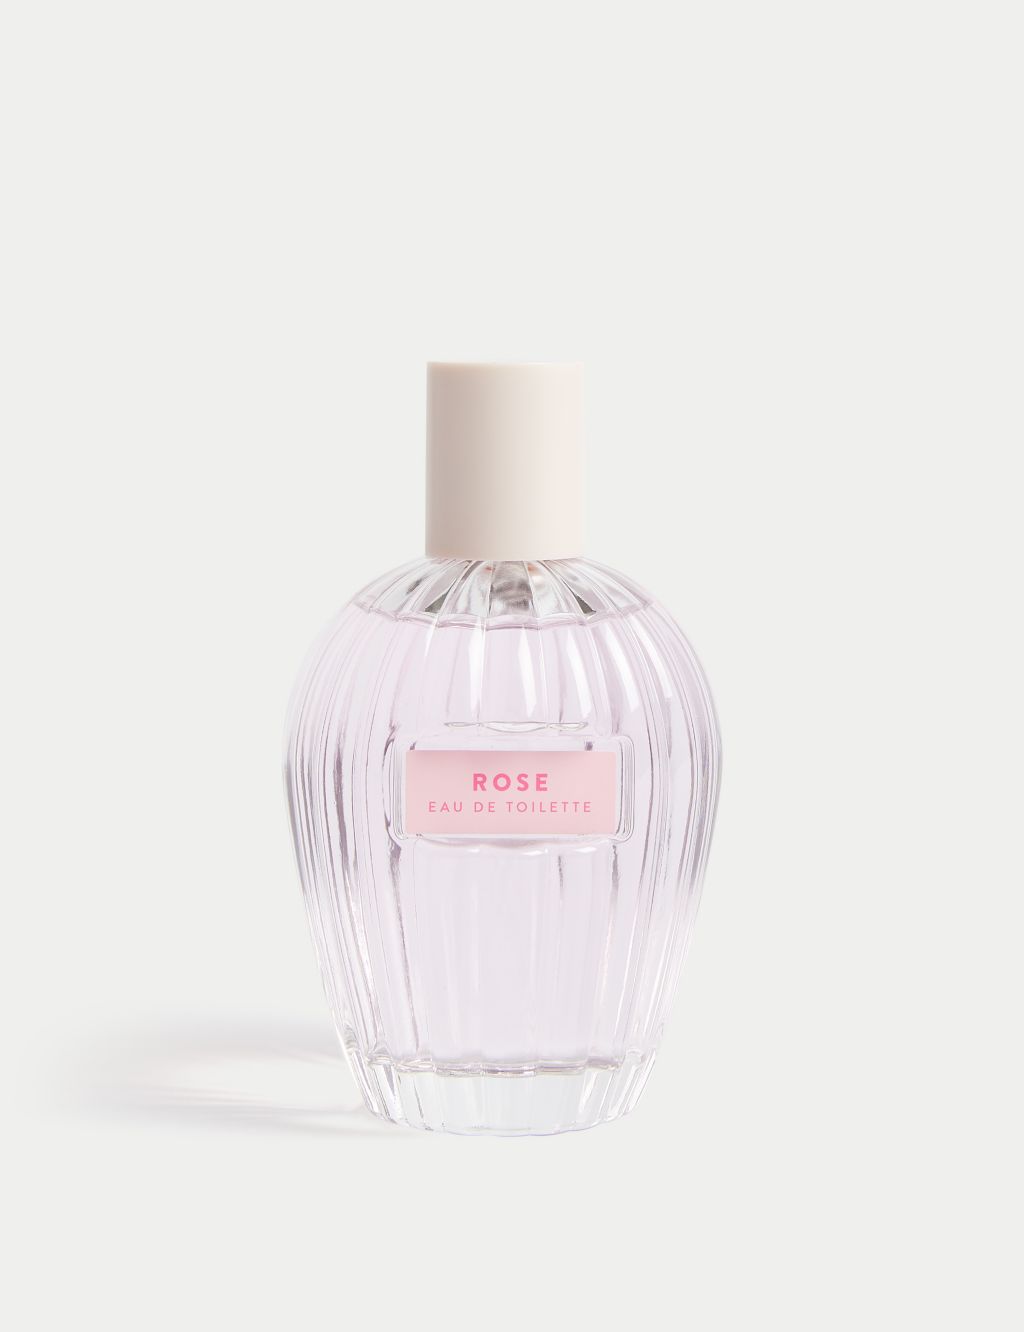 Buy Marks & Spencer Sheer Radiance 30 Ml - Perfume for Women 9098741